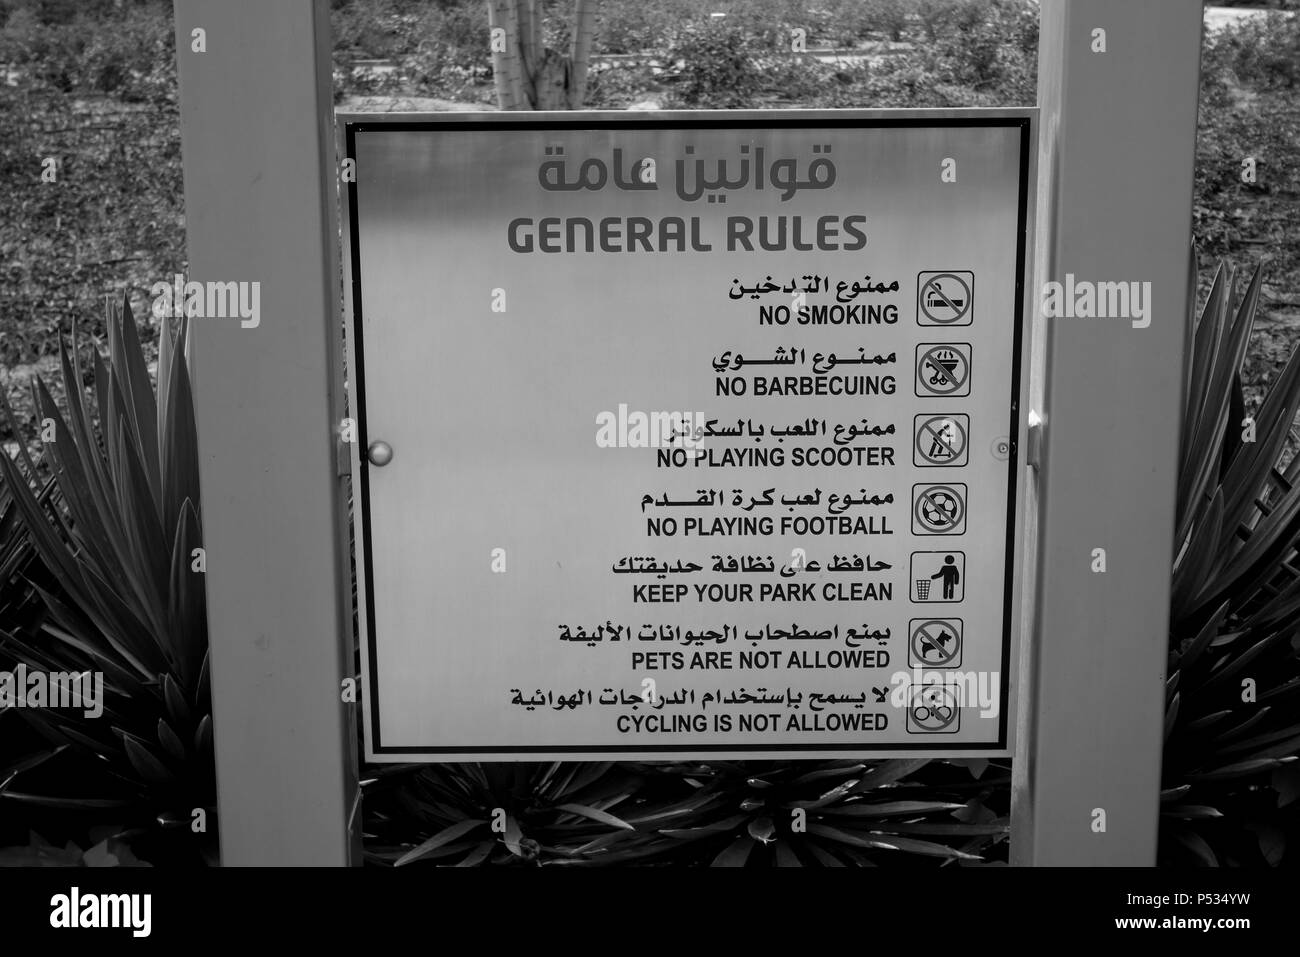 Liste der Park Regeln und Vorschriften in Englisch und Arabisch in einem öffentlichen Park angezeigt, Kuwait City, Kuwait, den Arabischen Golf, Naher Osten Stockfoto